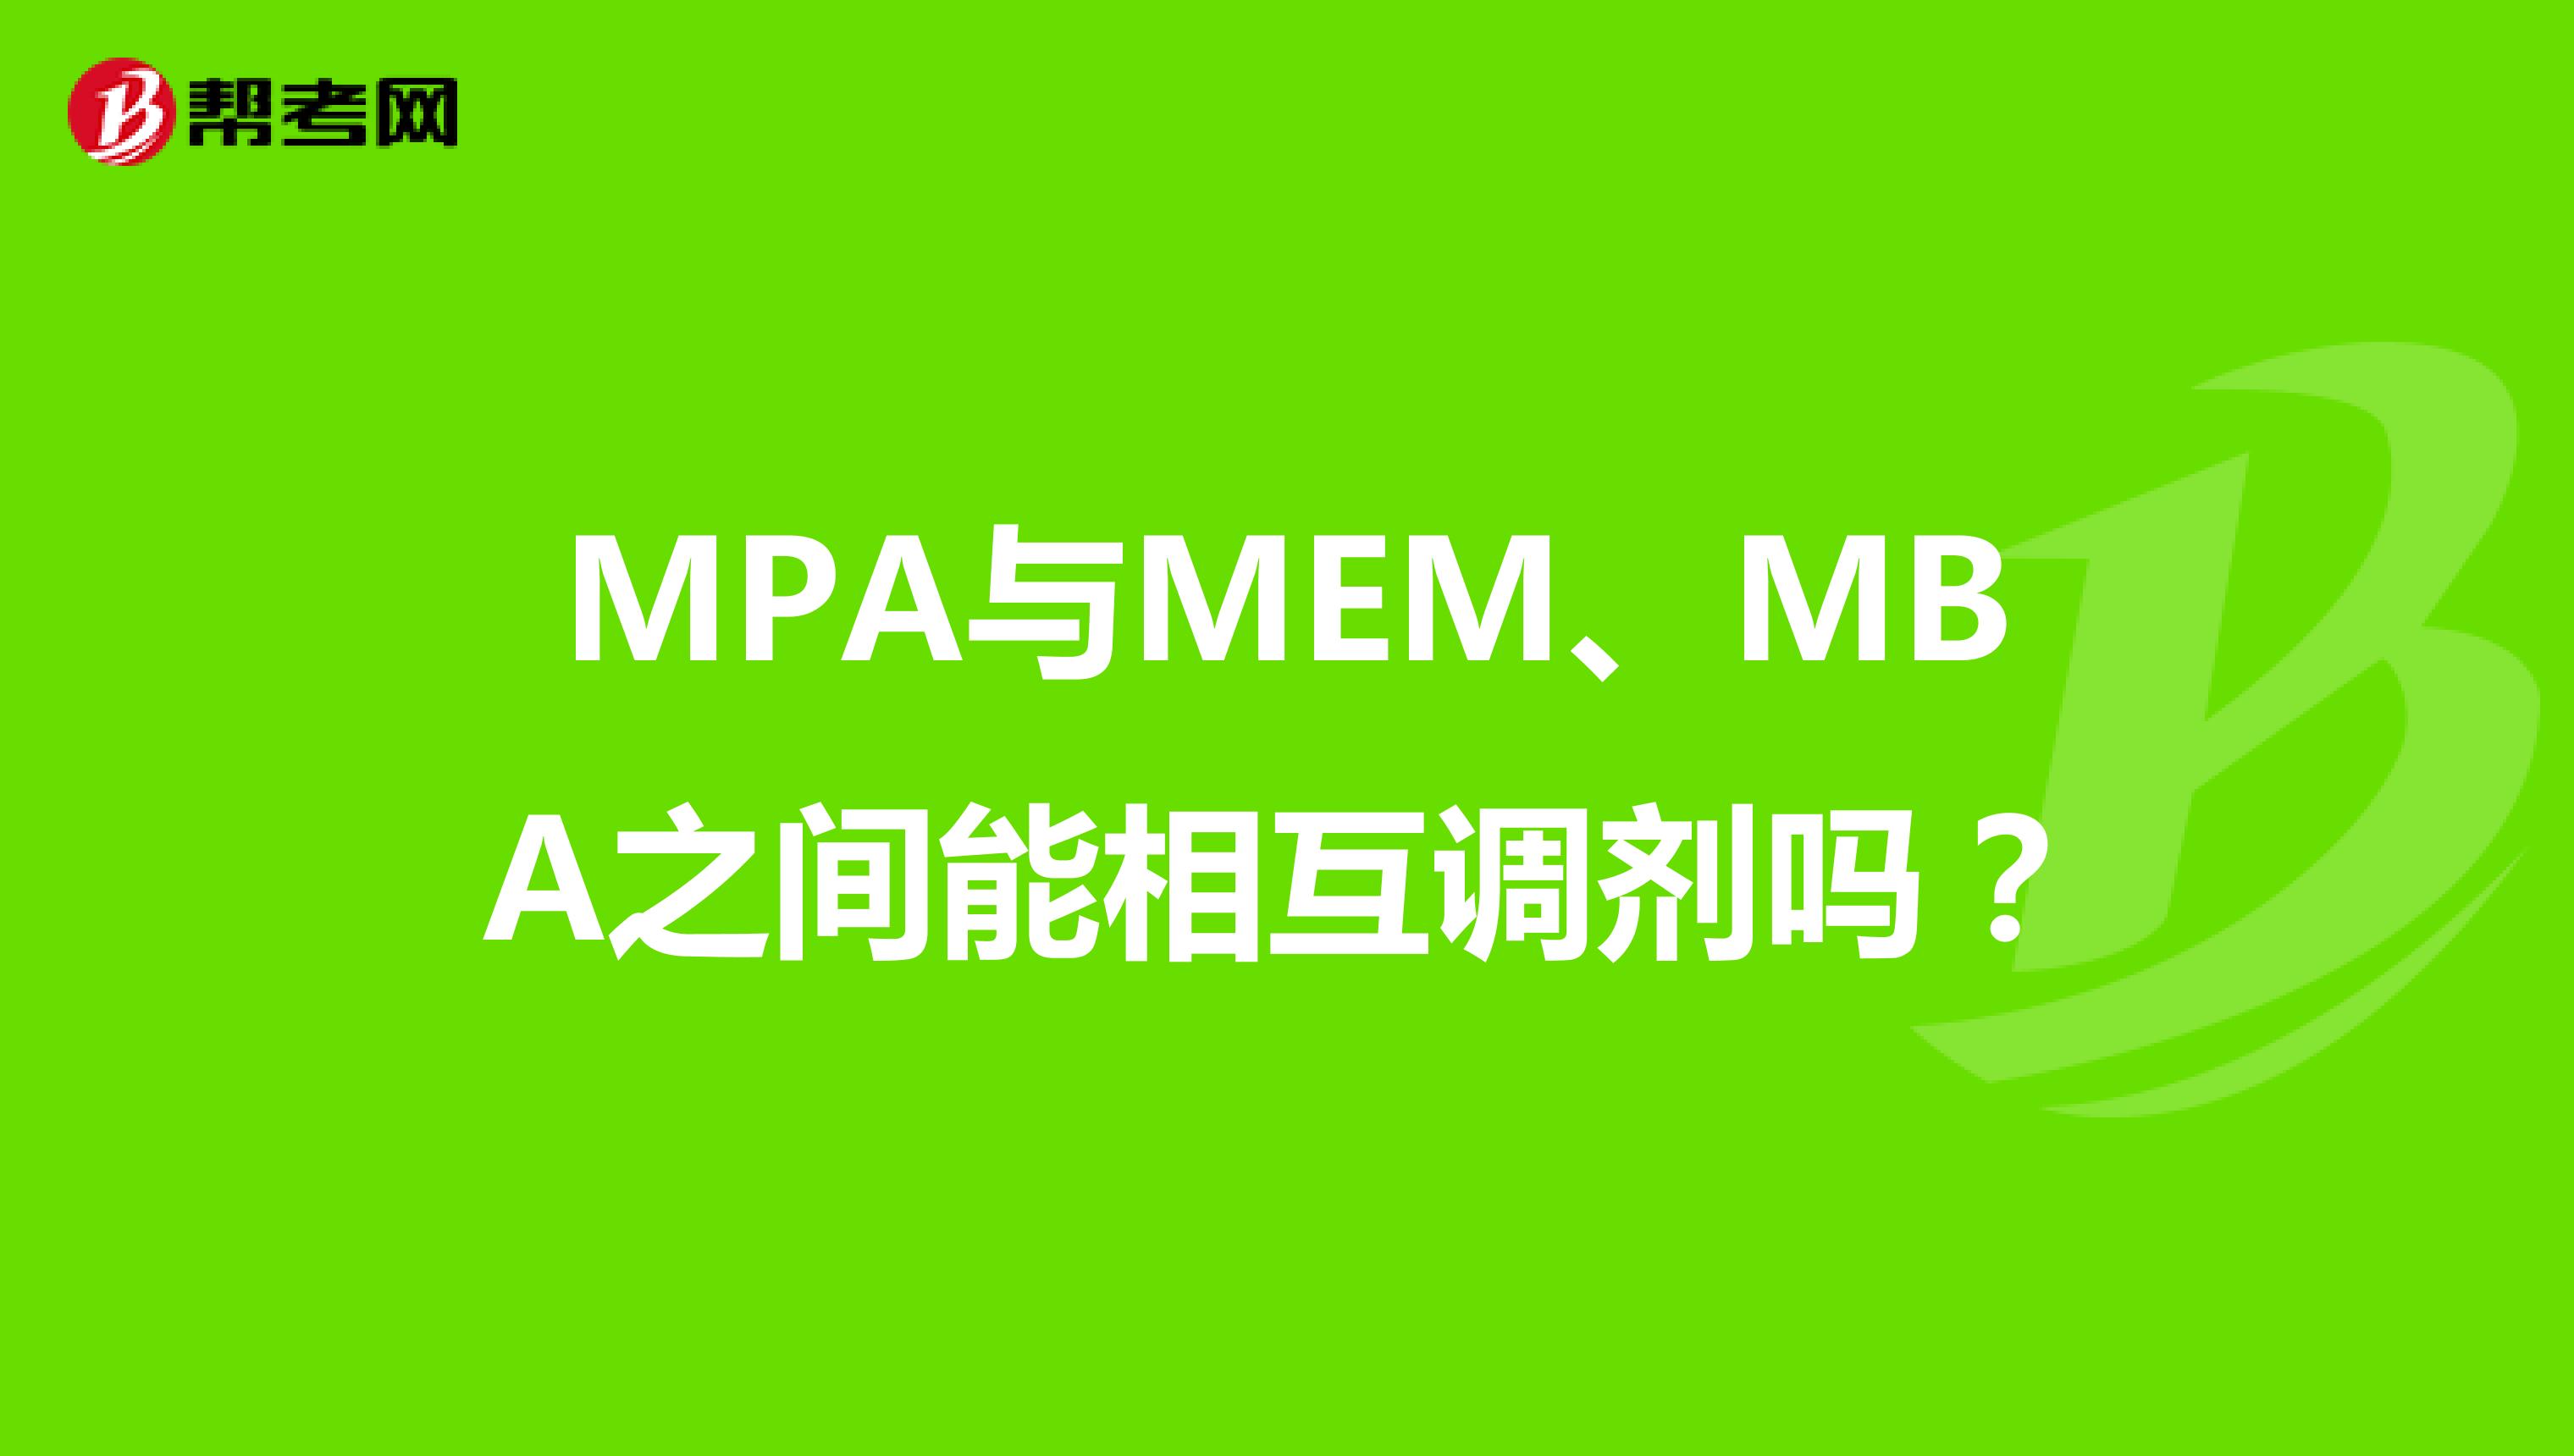 MPA与MEM、MBA之间能相互调剂吗？